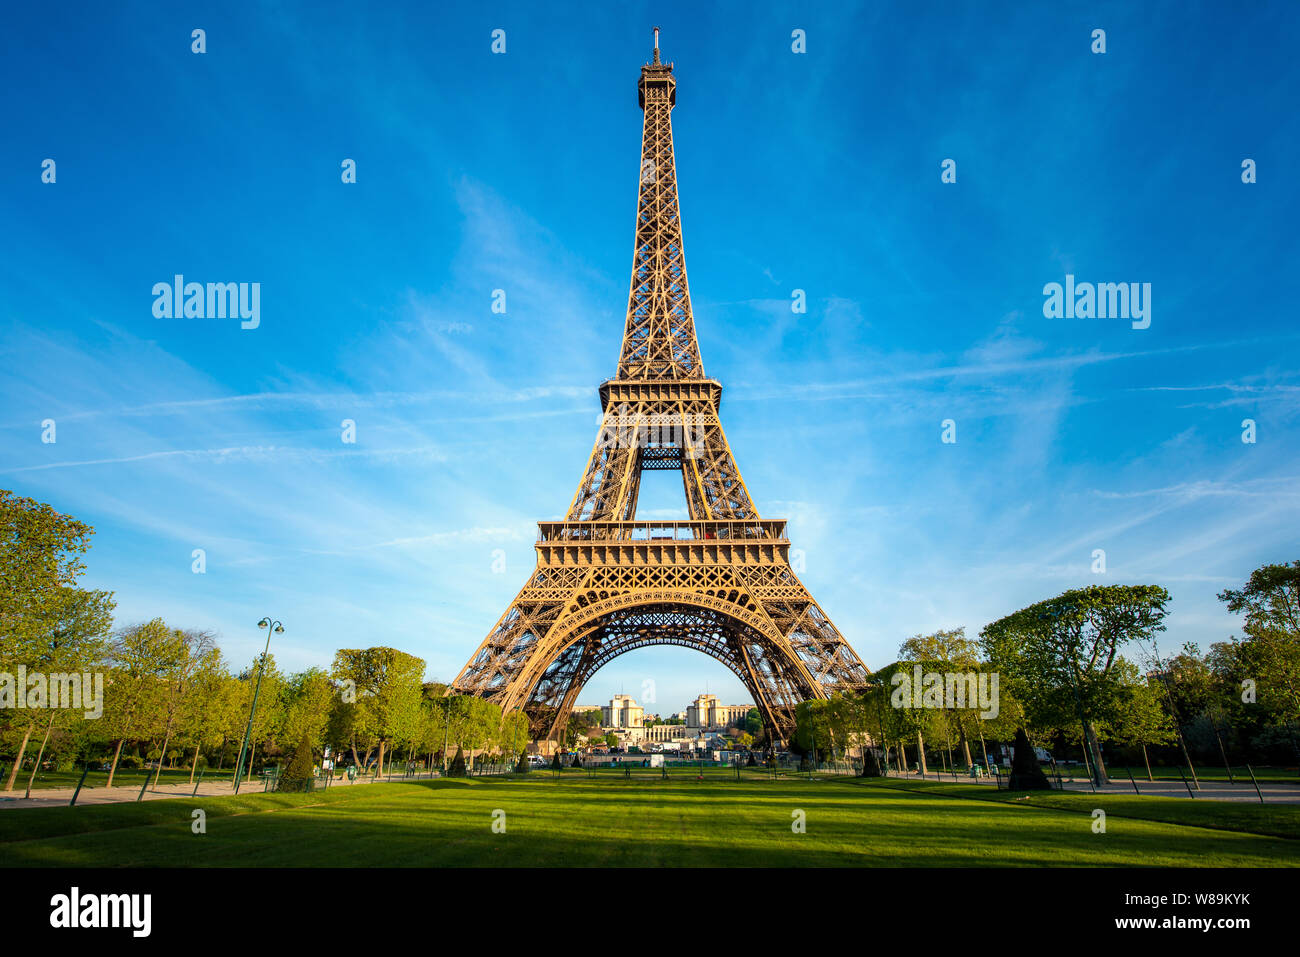 Vue panoramique du paysage sur la Tour Eiffel et le parc pendant la journée ensoleillée à Paris, France. Voyages et vacances. Banque D'Images